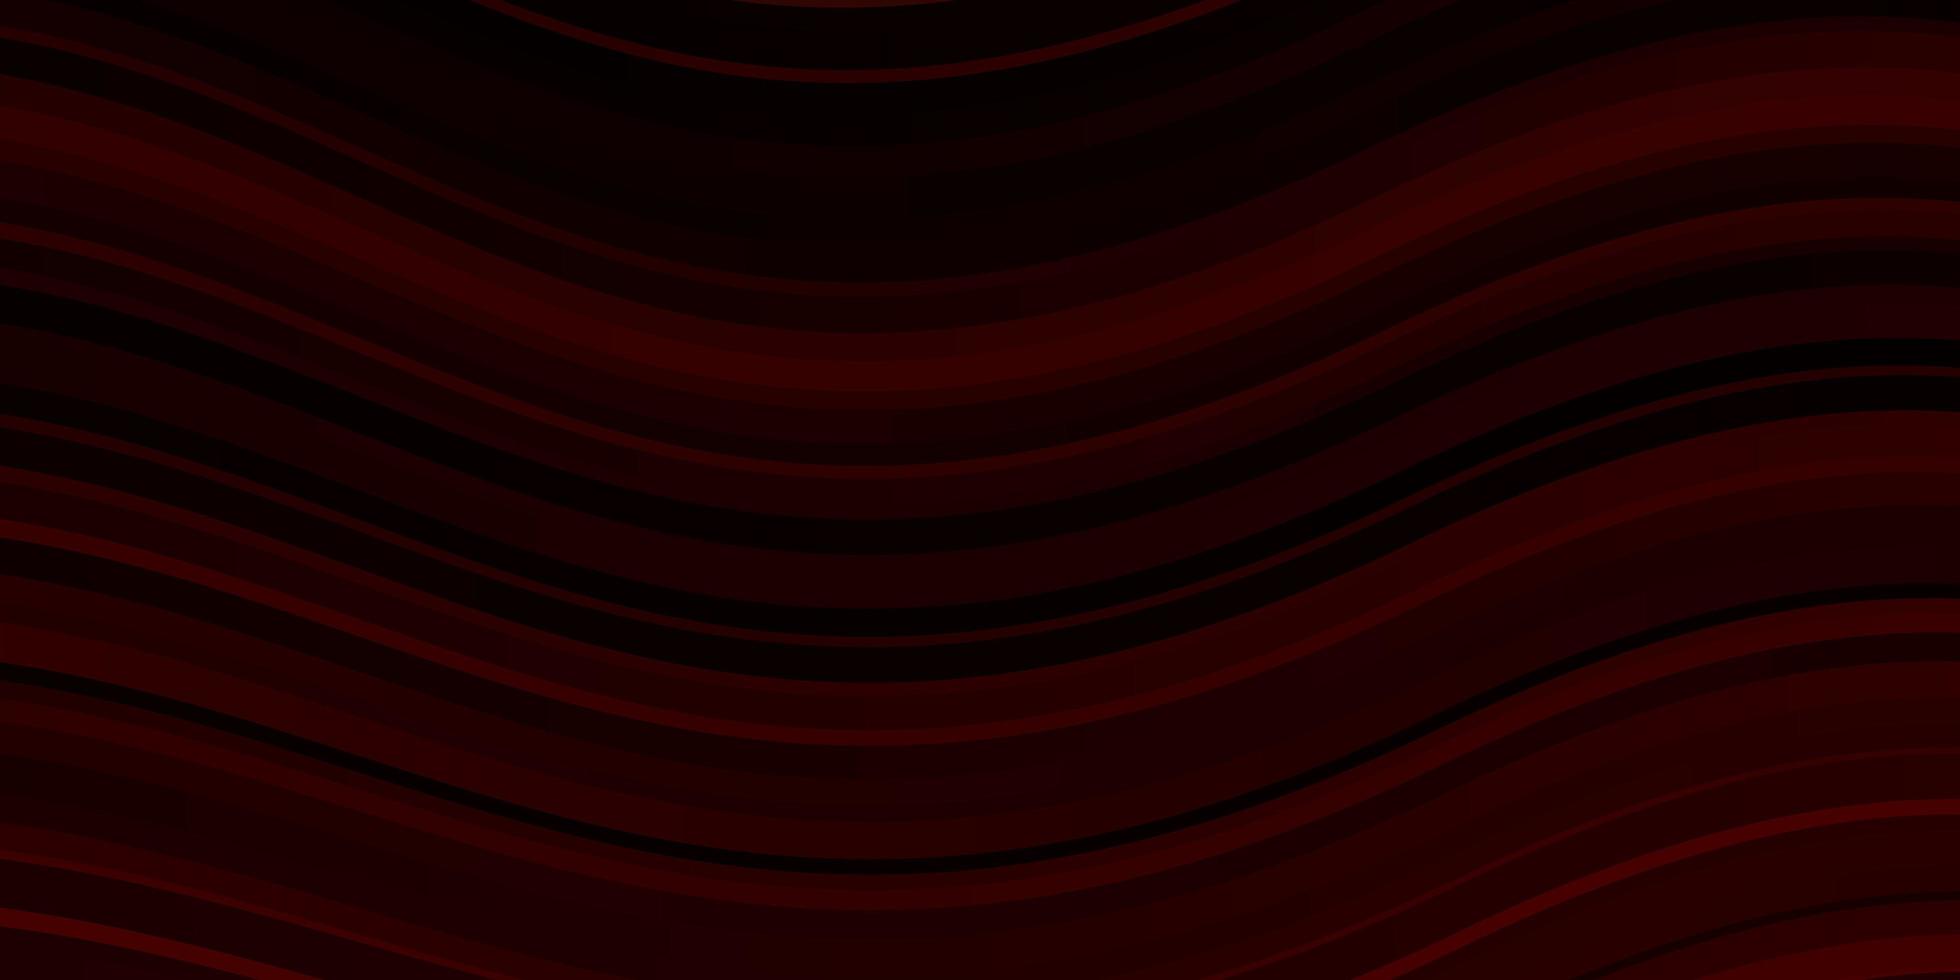 fundo vector vermelho escuro com linhas irônicas amostra geométrica colorida com modelo de curvas gradientes para o seu design de interface do usuário